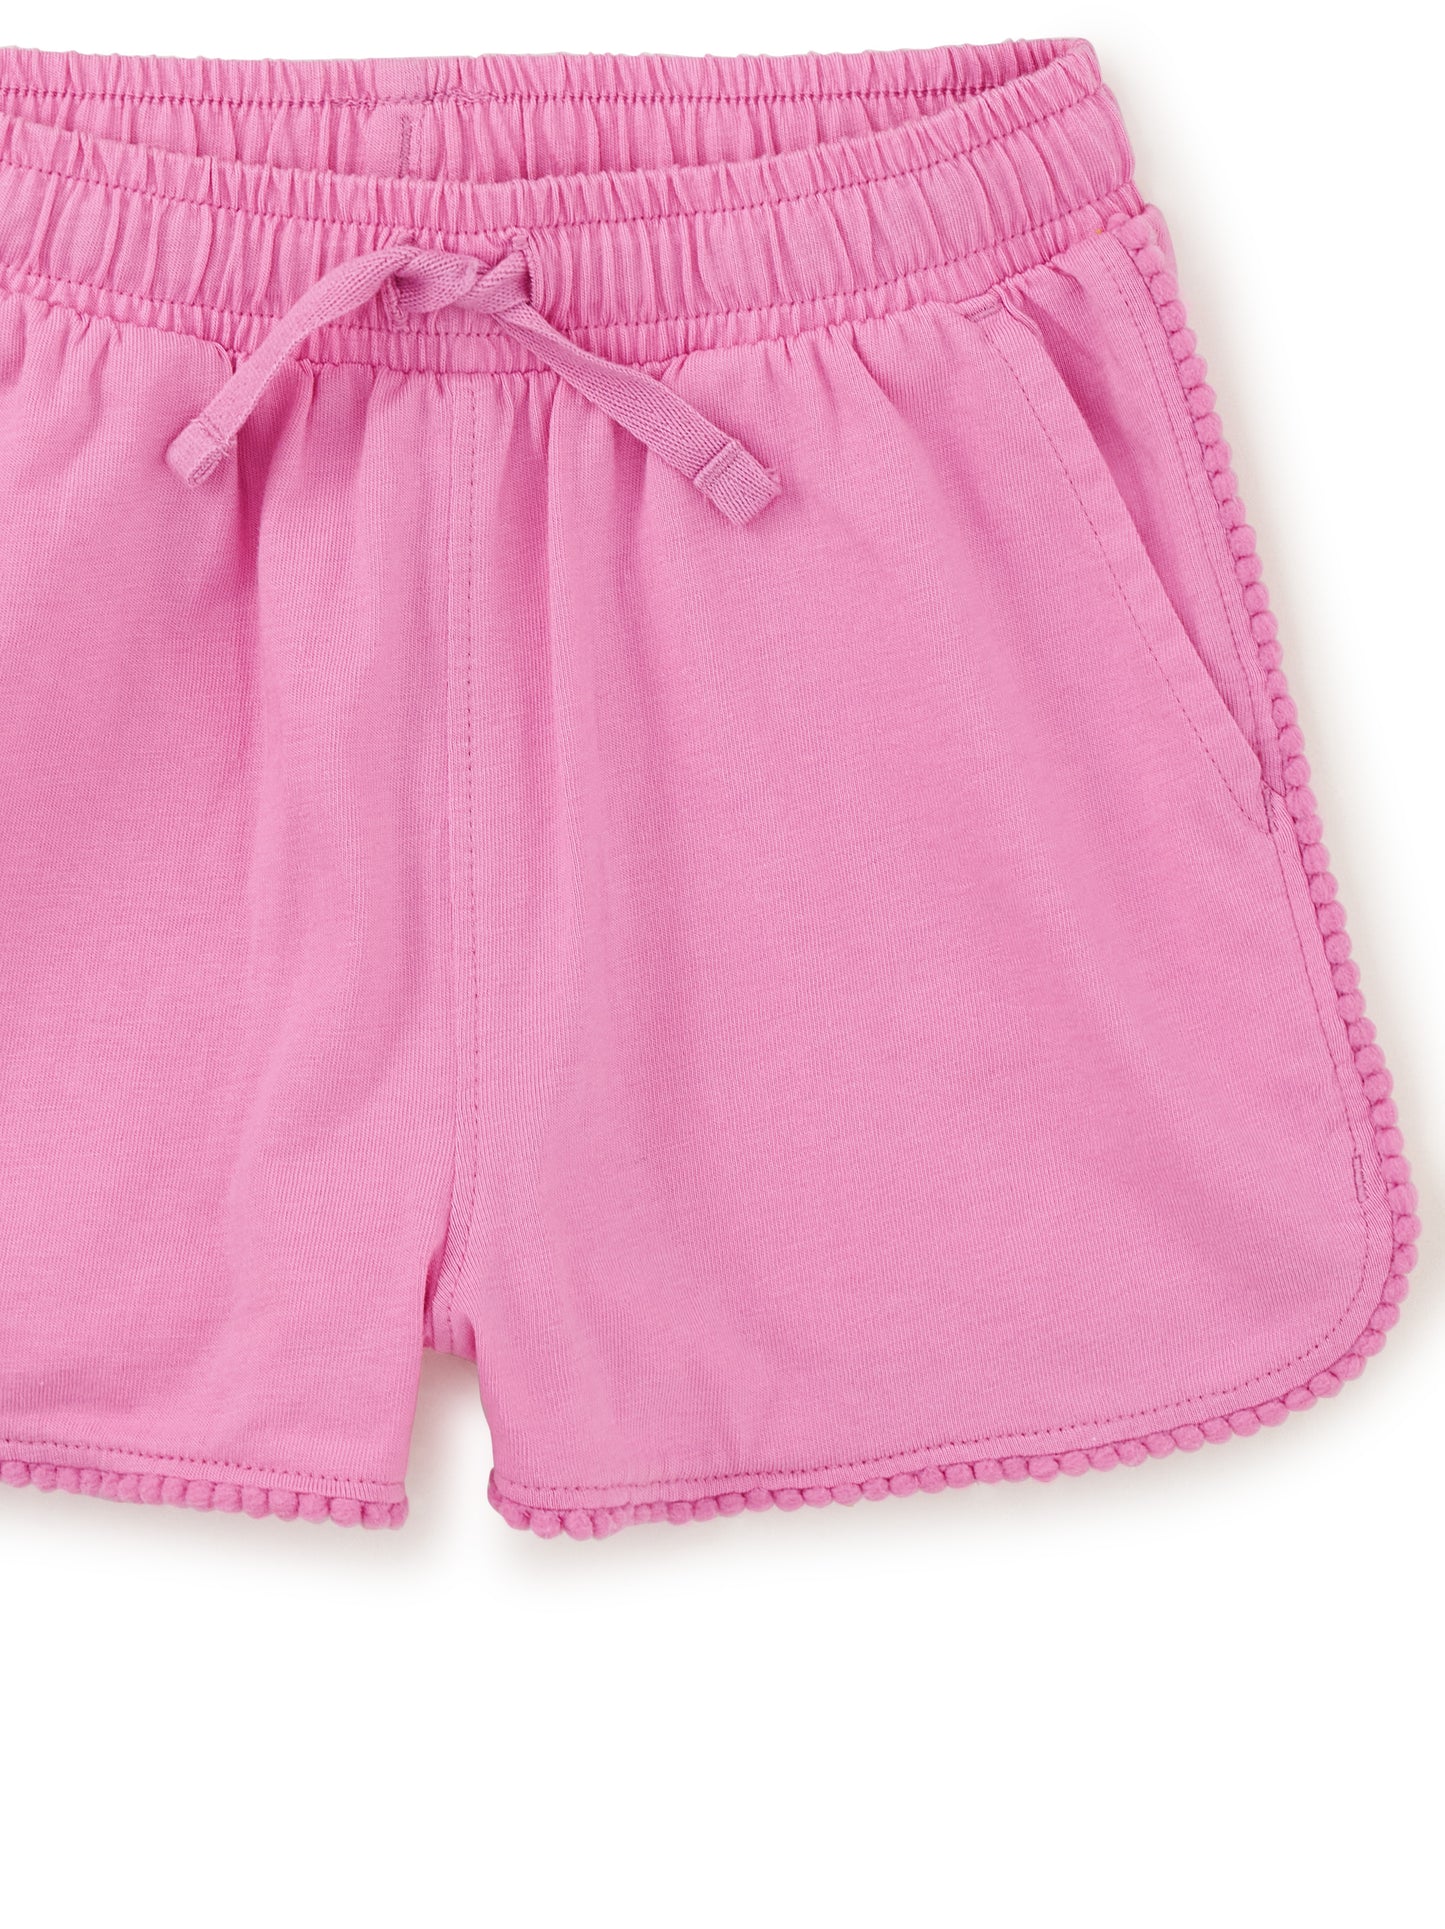 Perennial Pink Pom Pom Gym Shorts